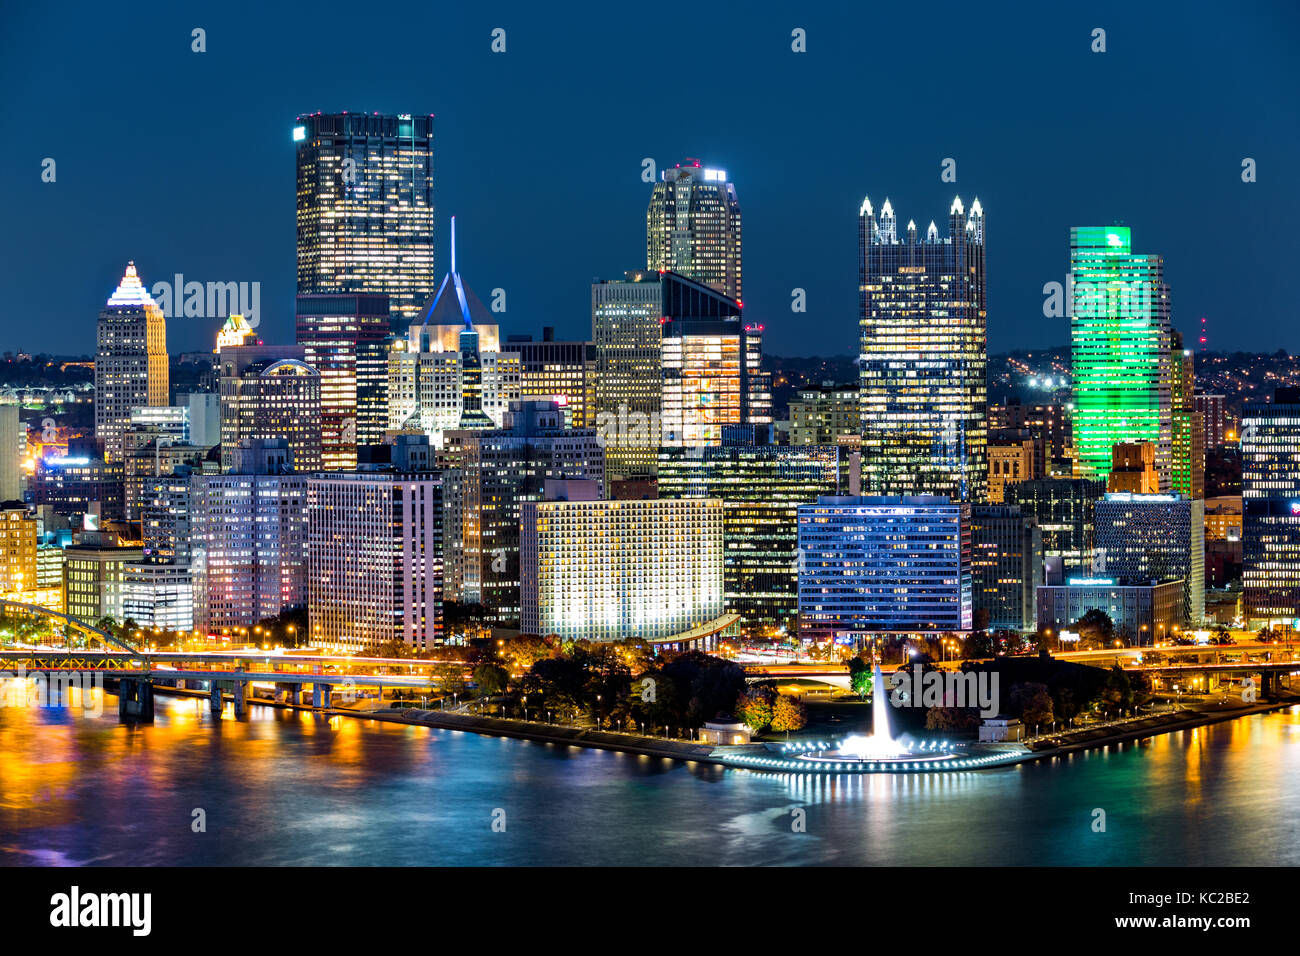 Le centre-ville de Pittsburgh par nuit. Situé au confluent de la Monongahela, d'Allegheny et de l'Ohio, Pittsburgh, également connu sous le nom de 'Steel city Banque D'Images